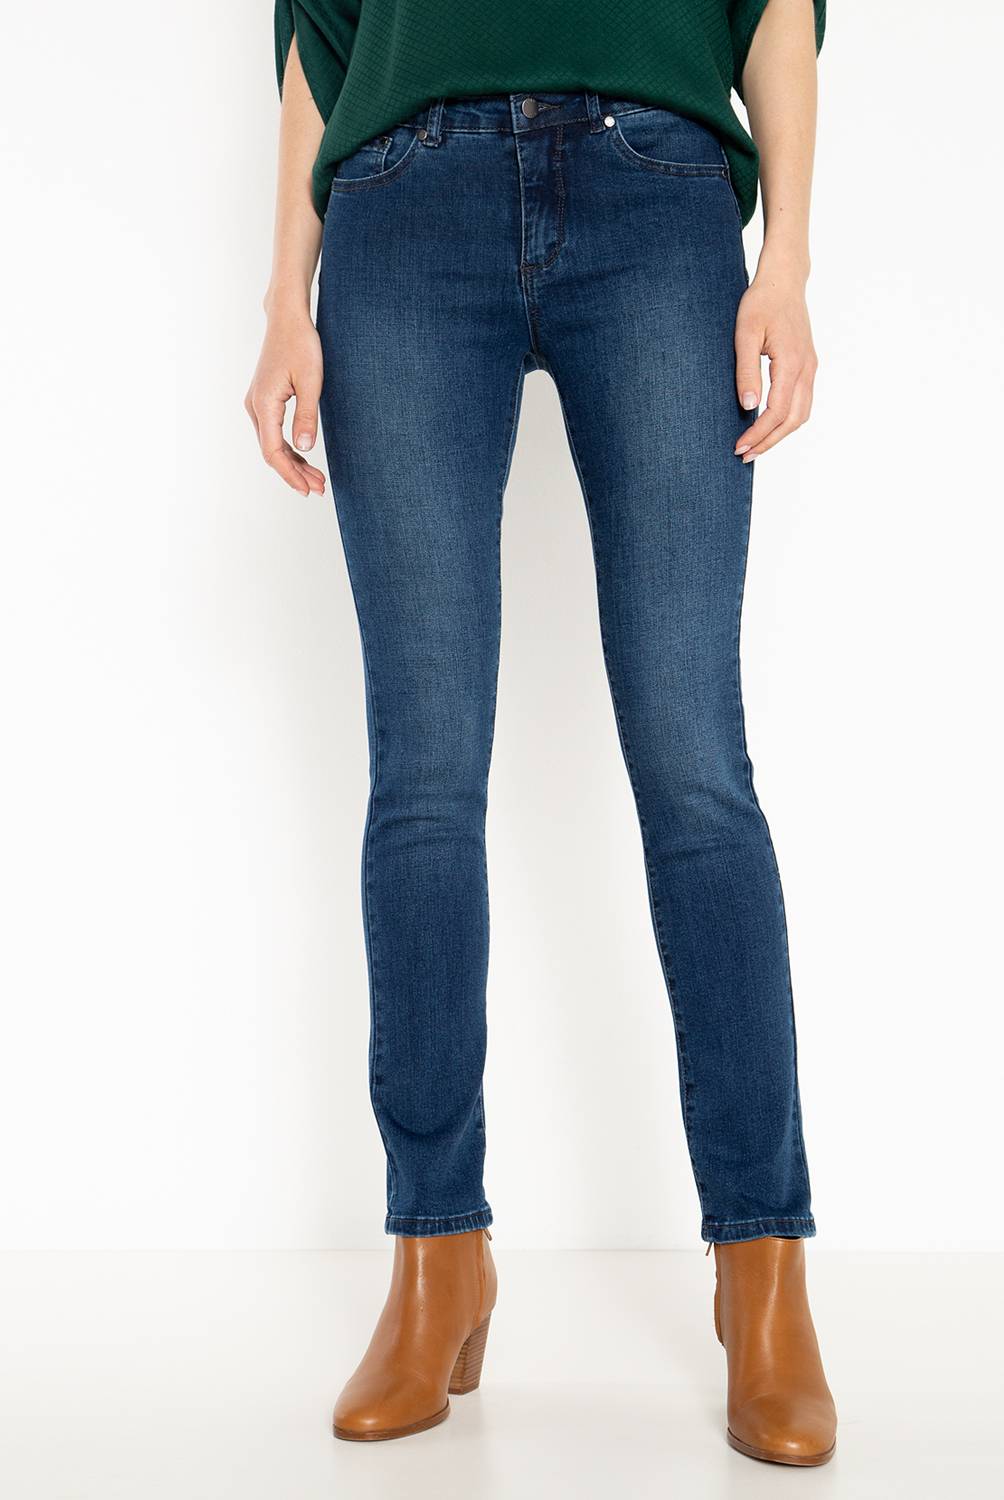 ELLE - Jeans de Algodón Mujer